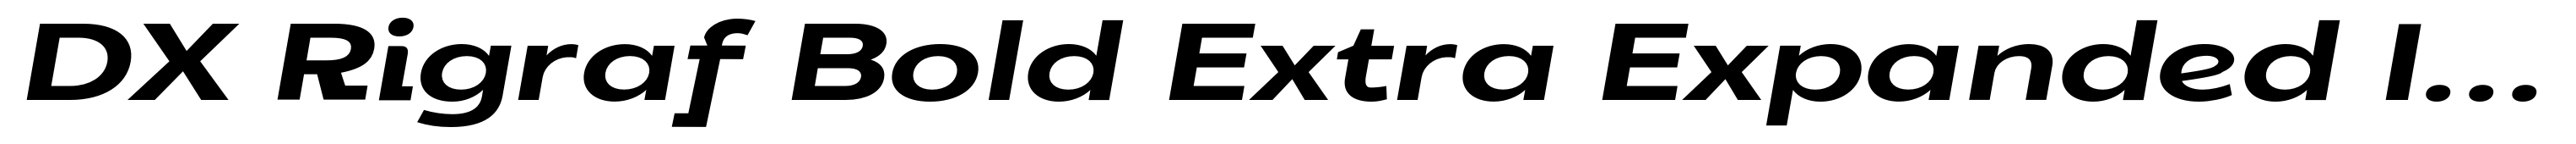 DX Rigraf Bold Extra Expanded Italic